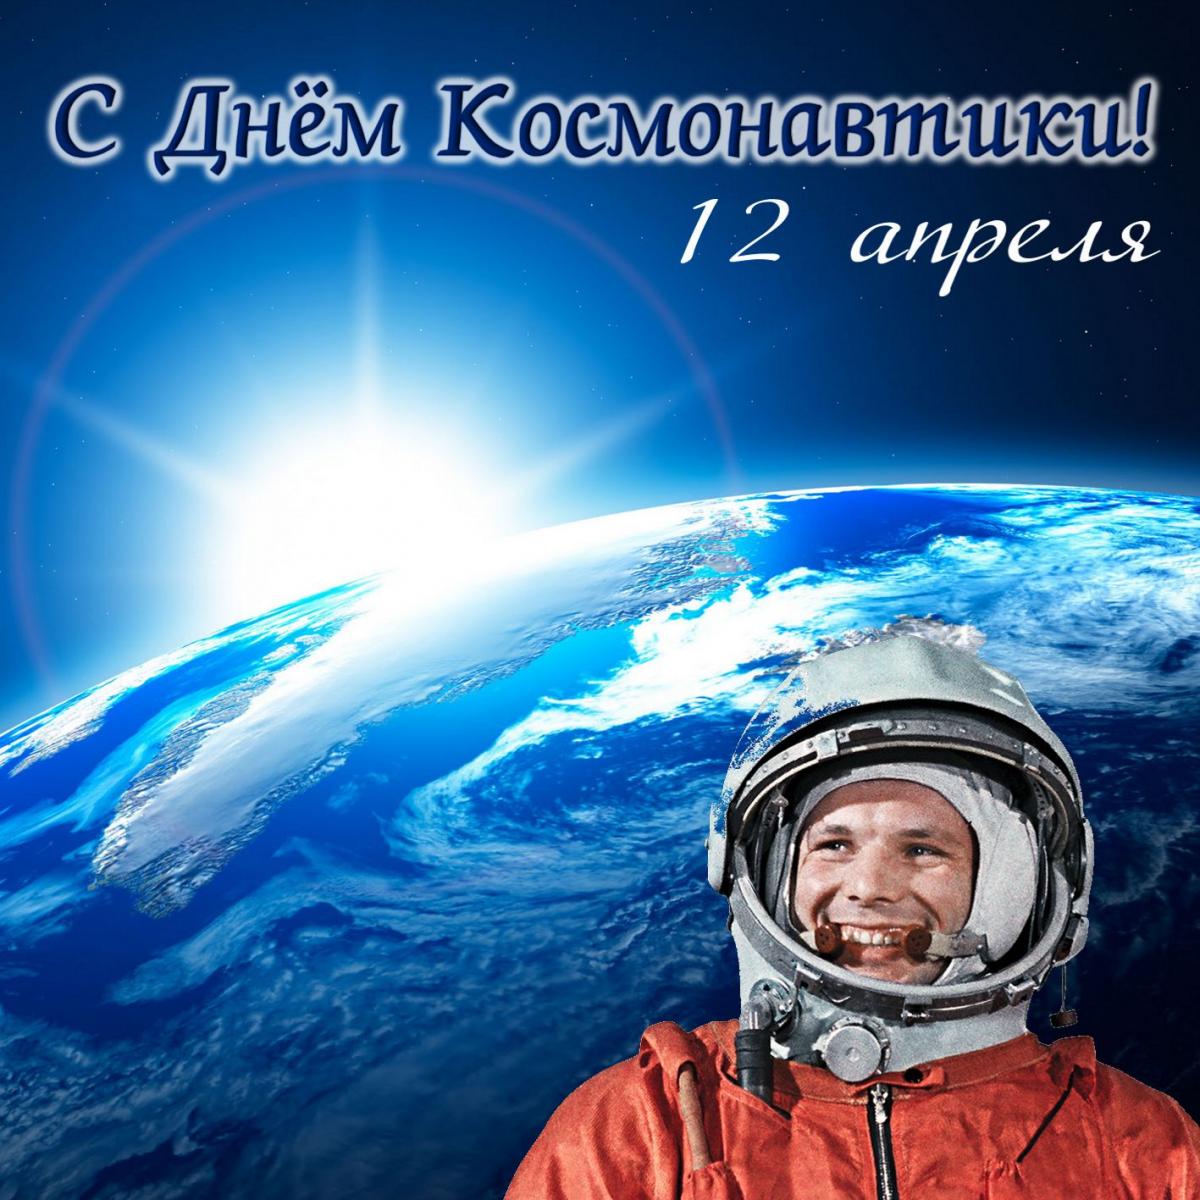 Сегодня в мире отмечается День космонавтики